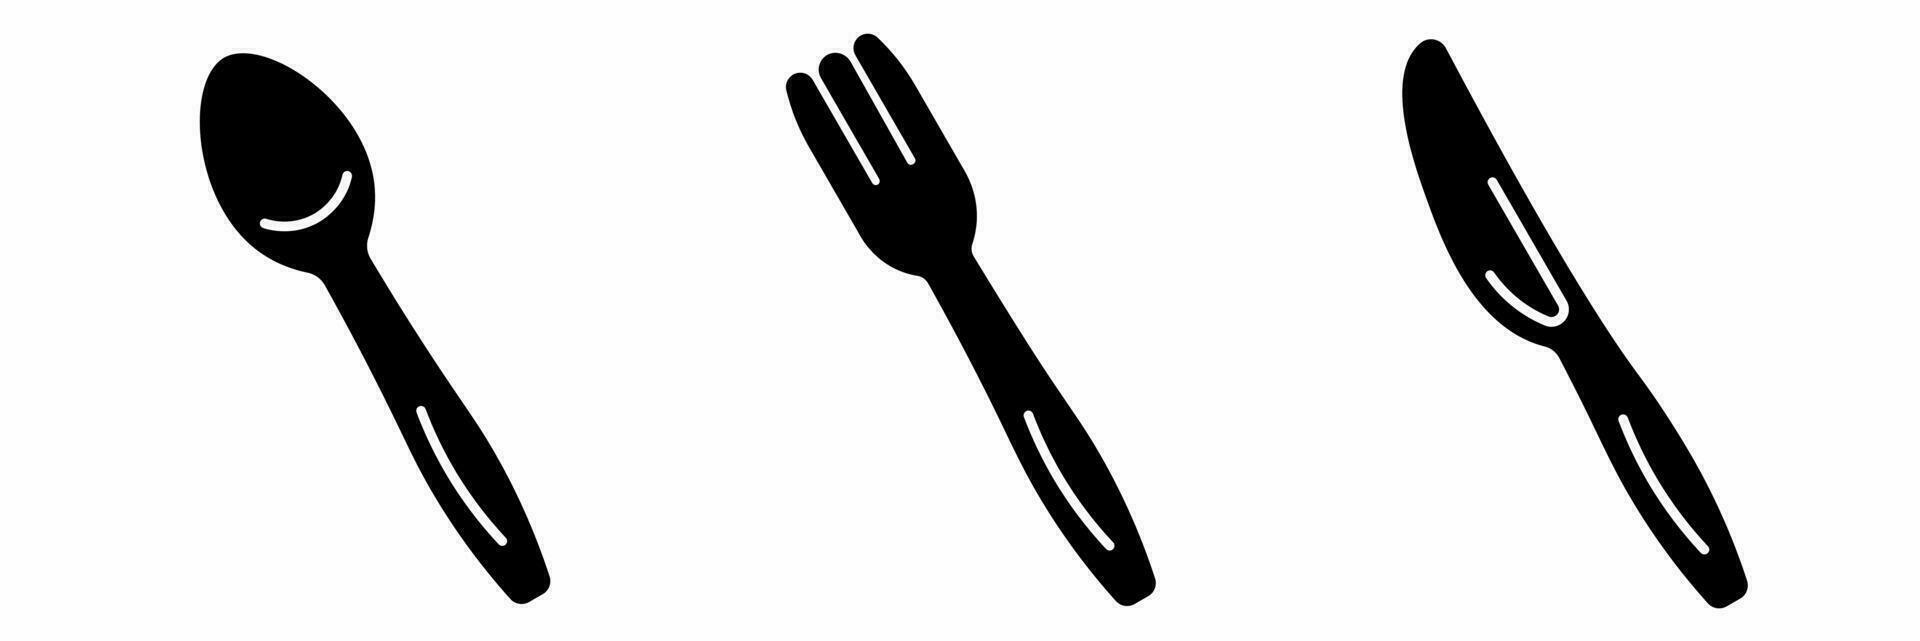 forchetta, coltello, cucchiaio icona nero bianca illustrazione collezione. vettore